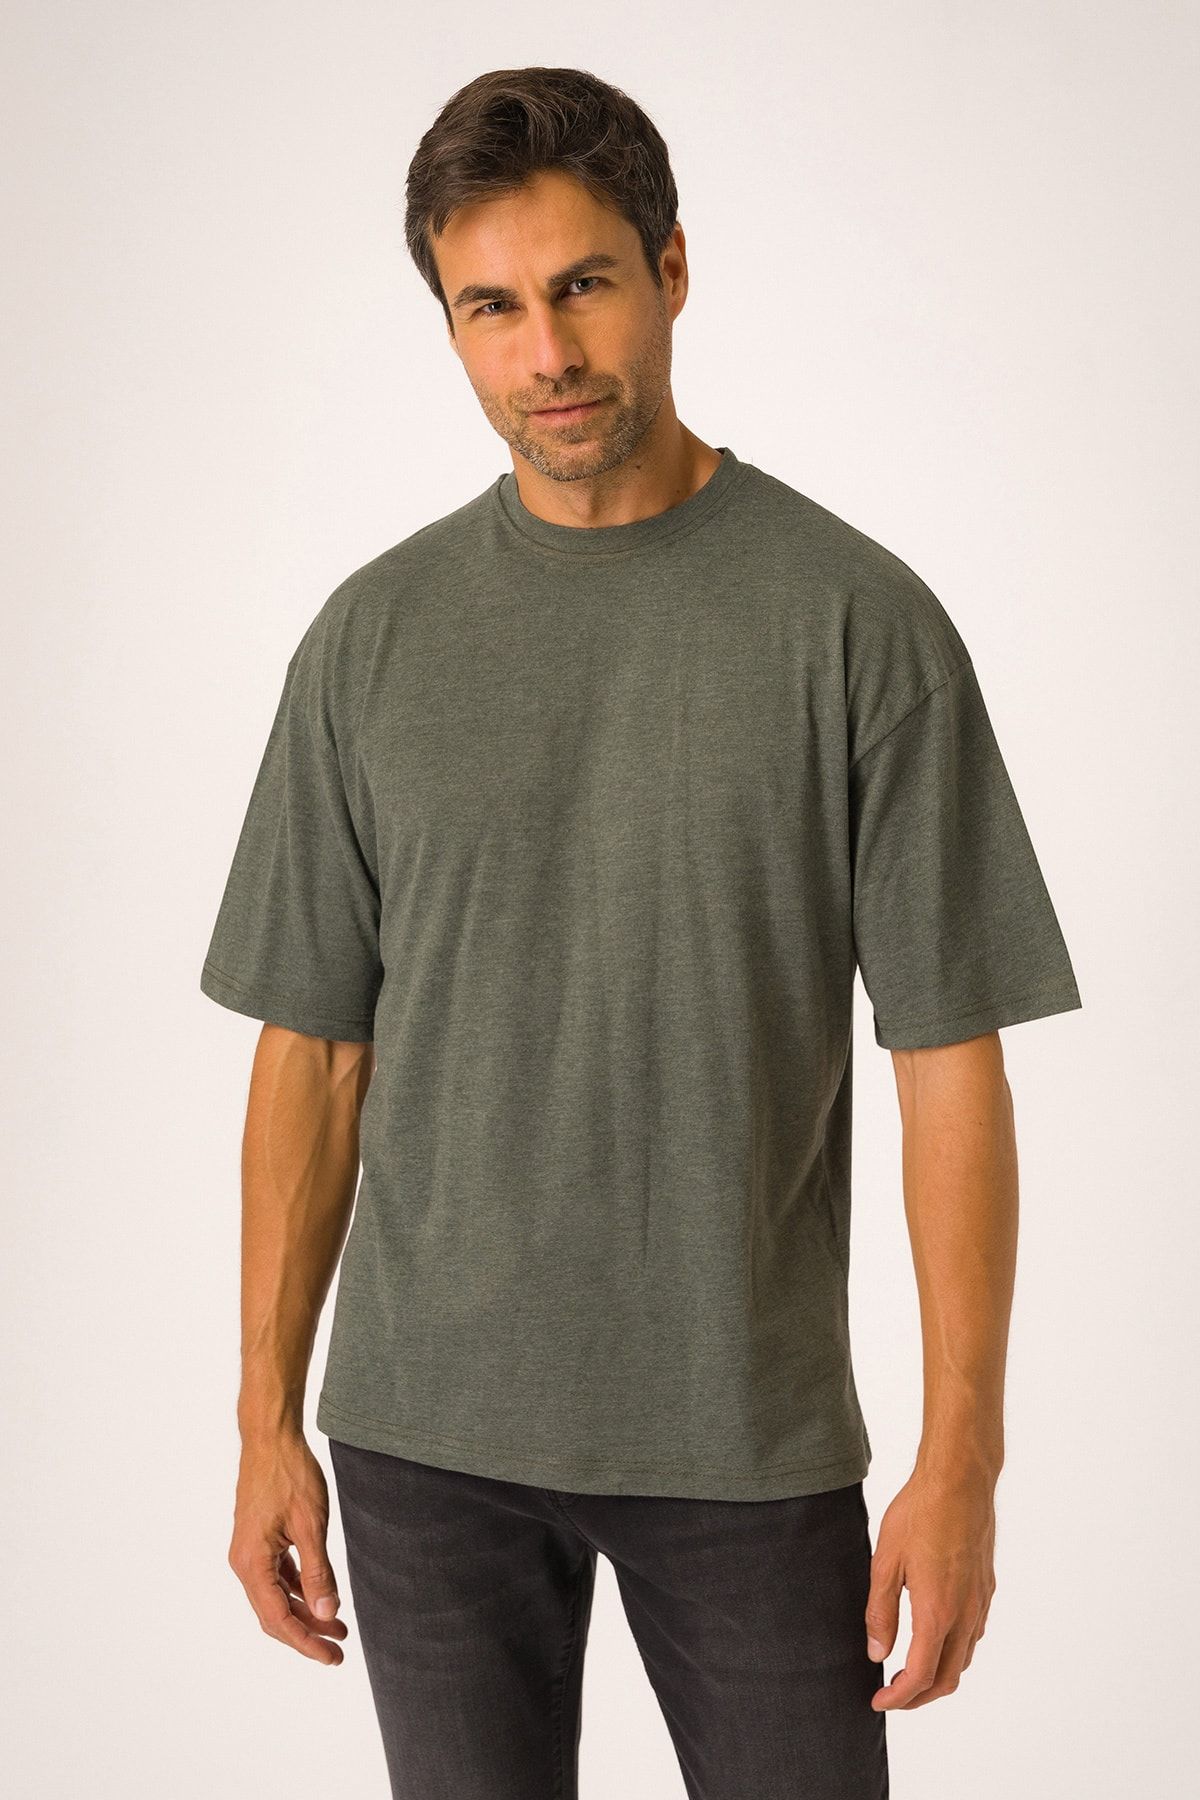 Runever Haki Oversize Yuvarlak Yaka Basıc Erkek T-shirt 22187